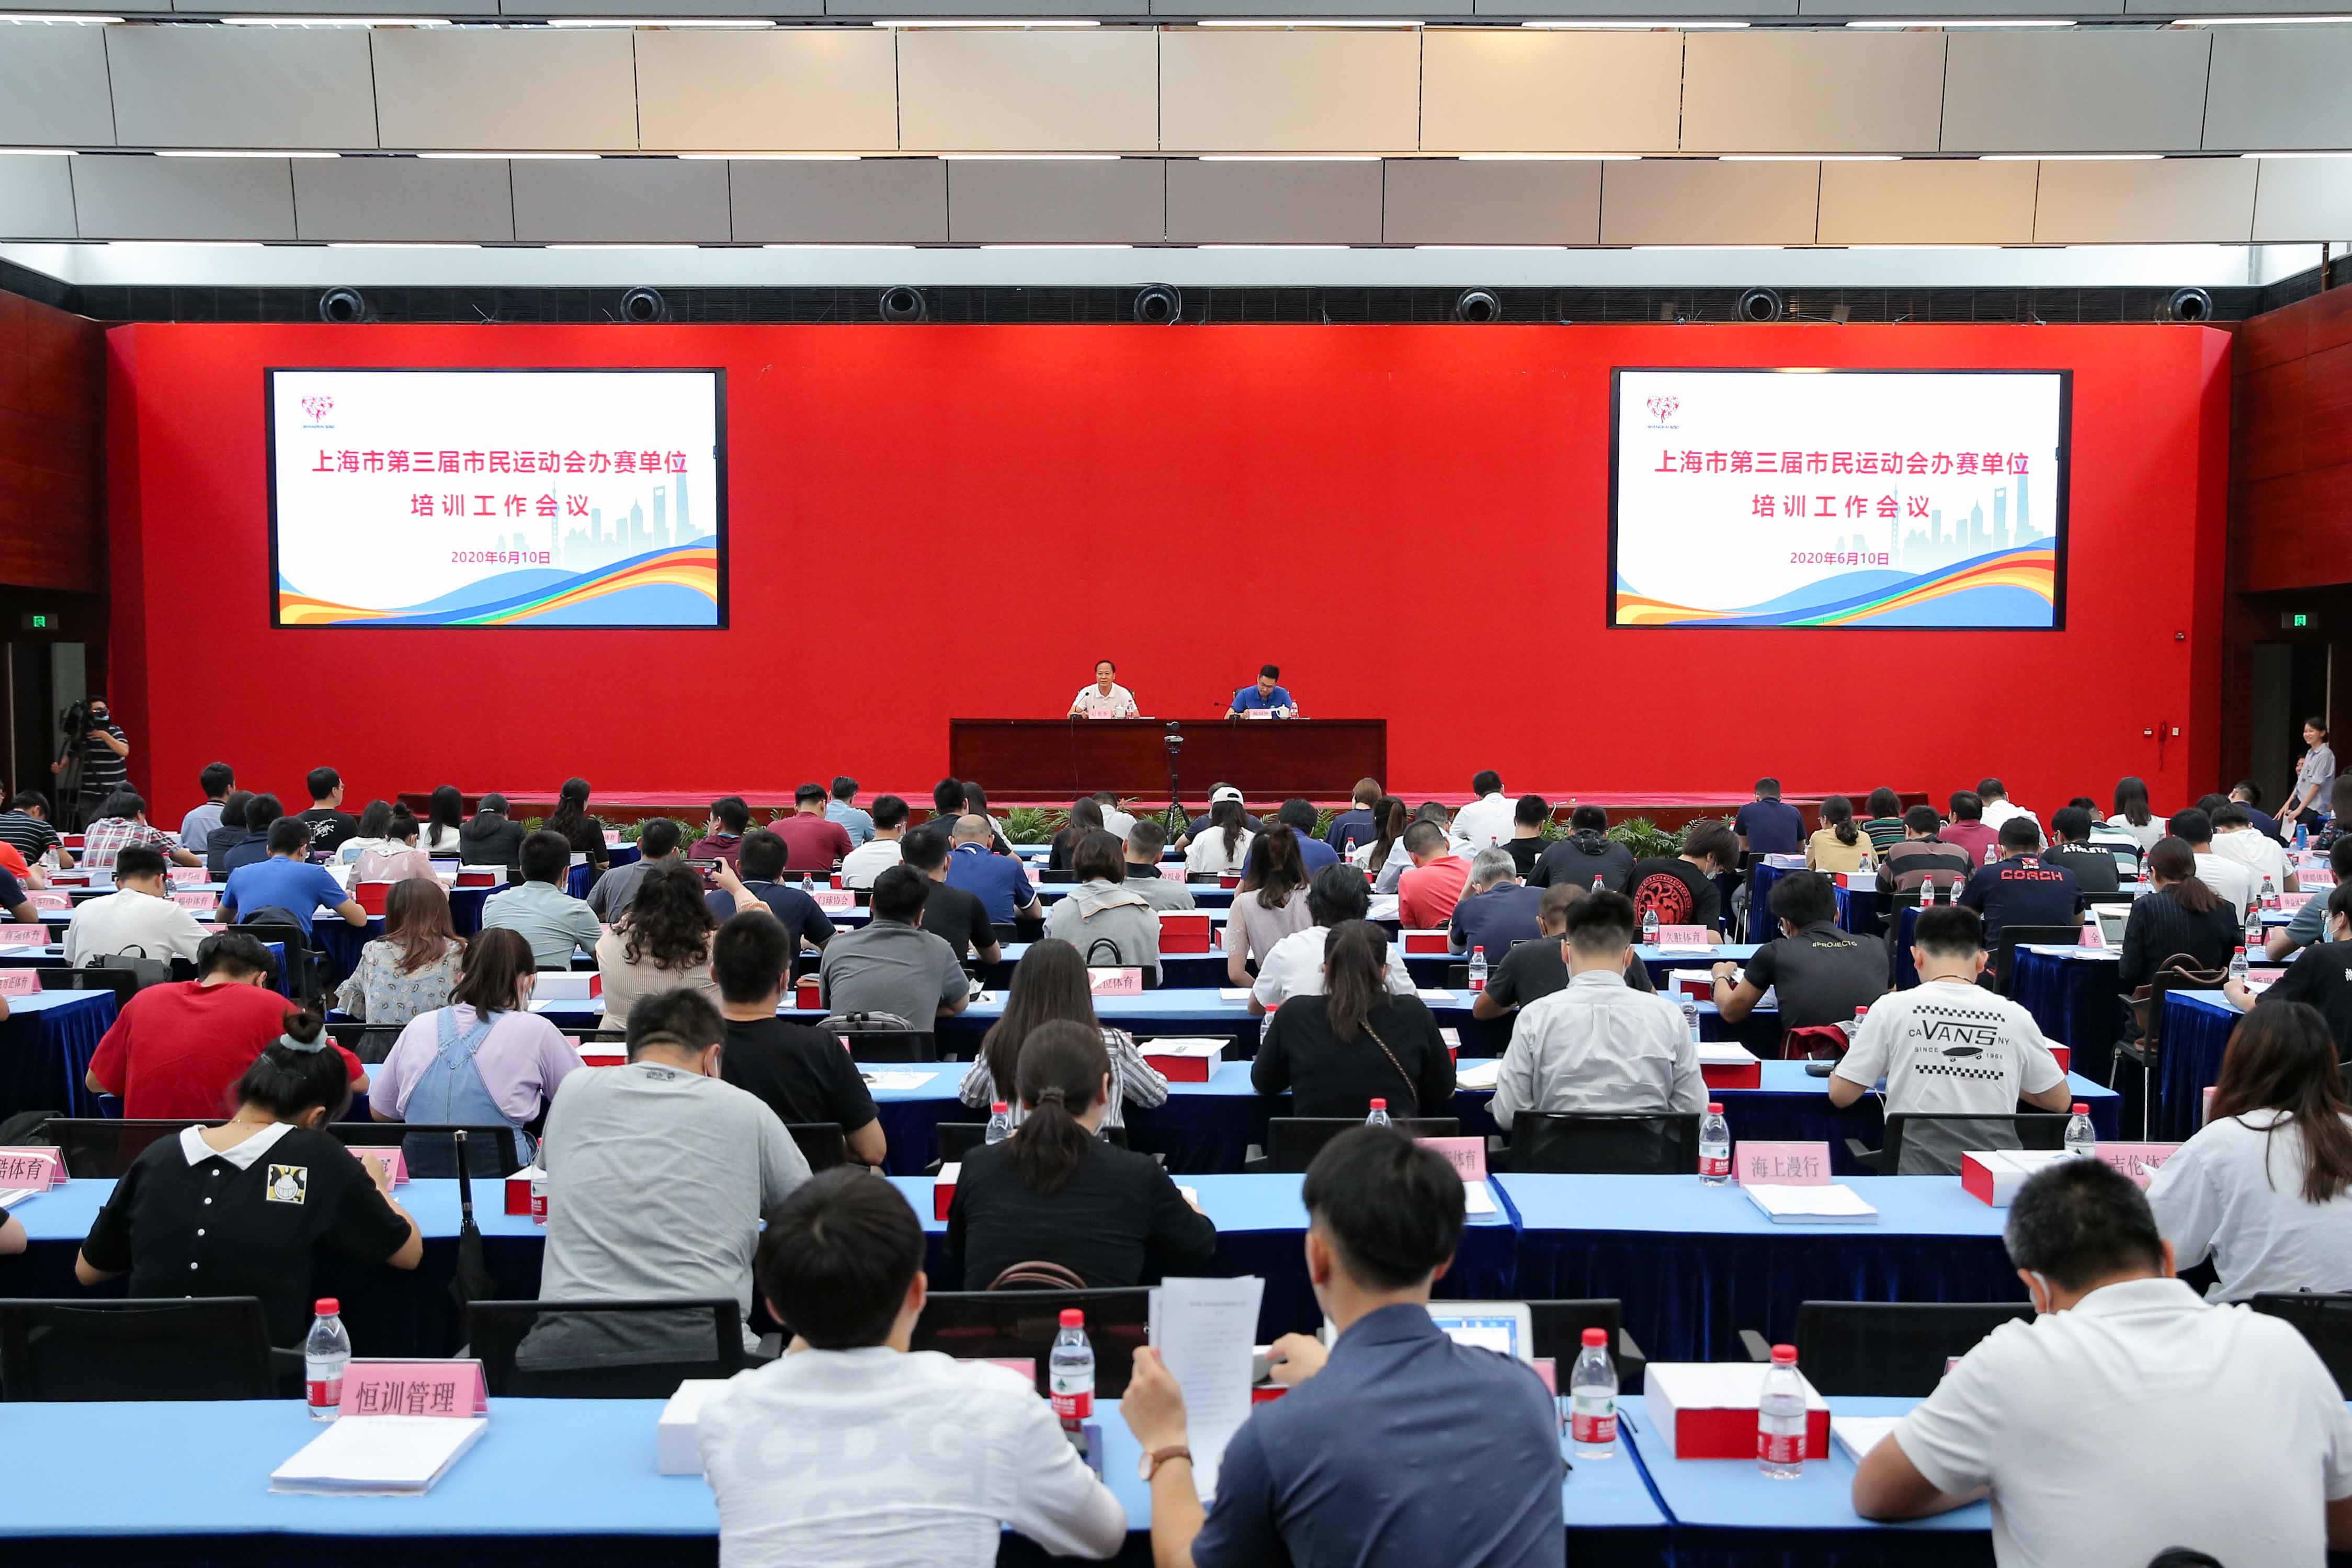 上海市第三届市民运动会组委会在东体大厦举行业务培训.jpg